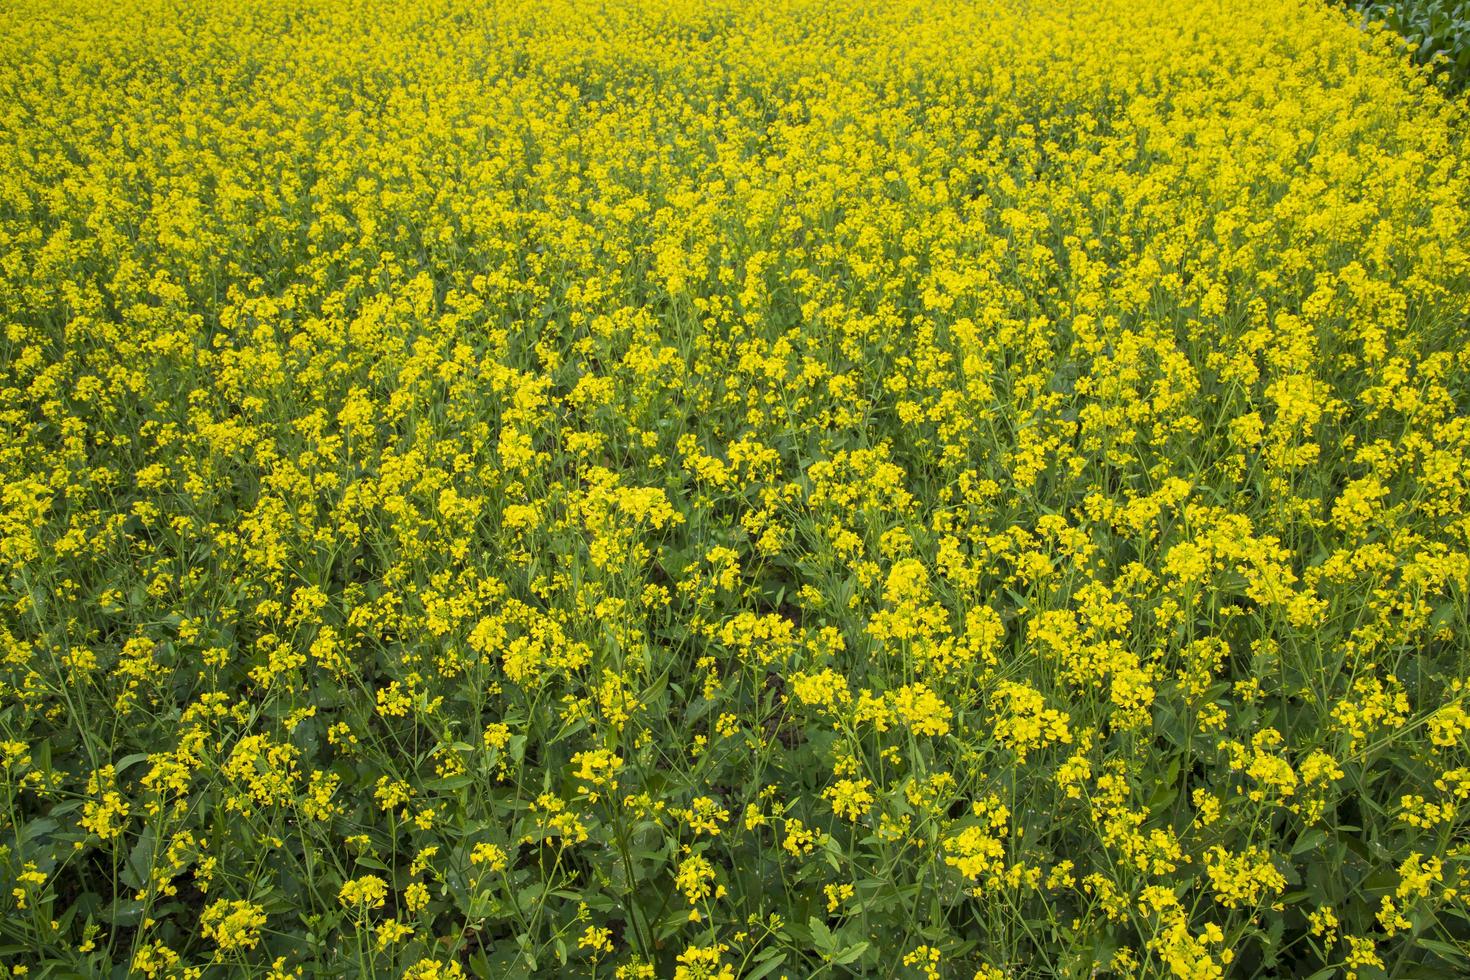 florescendo flores amarelas de colza no campo. pode ser usado como um fundo de textura floral foto